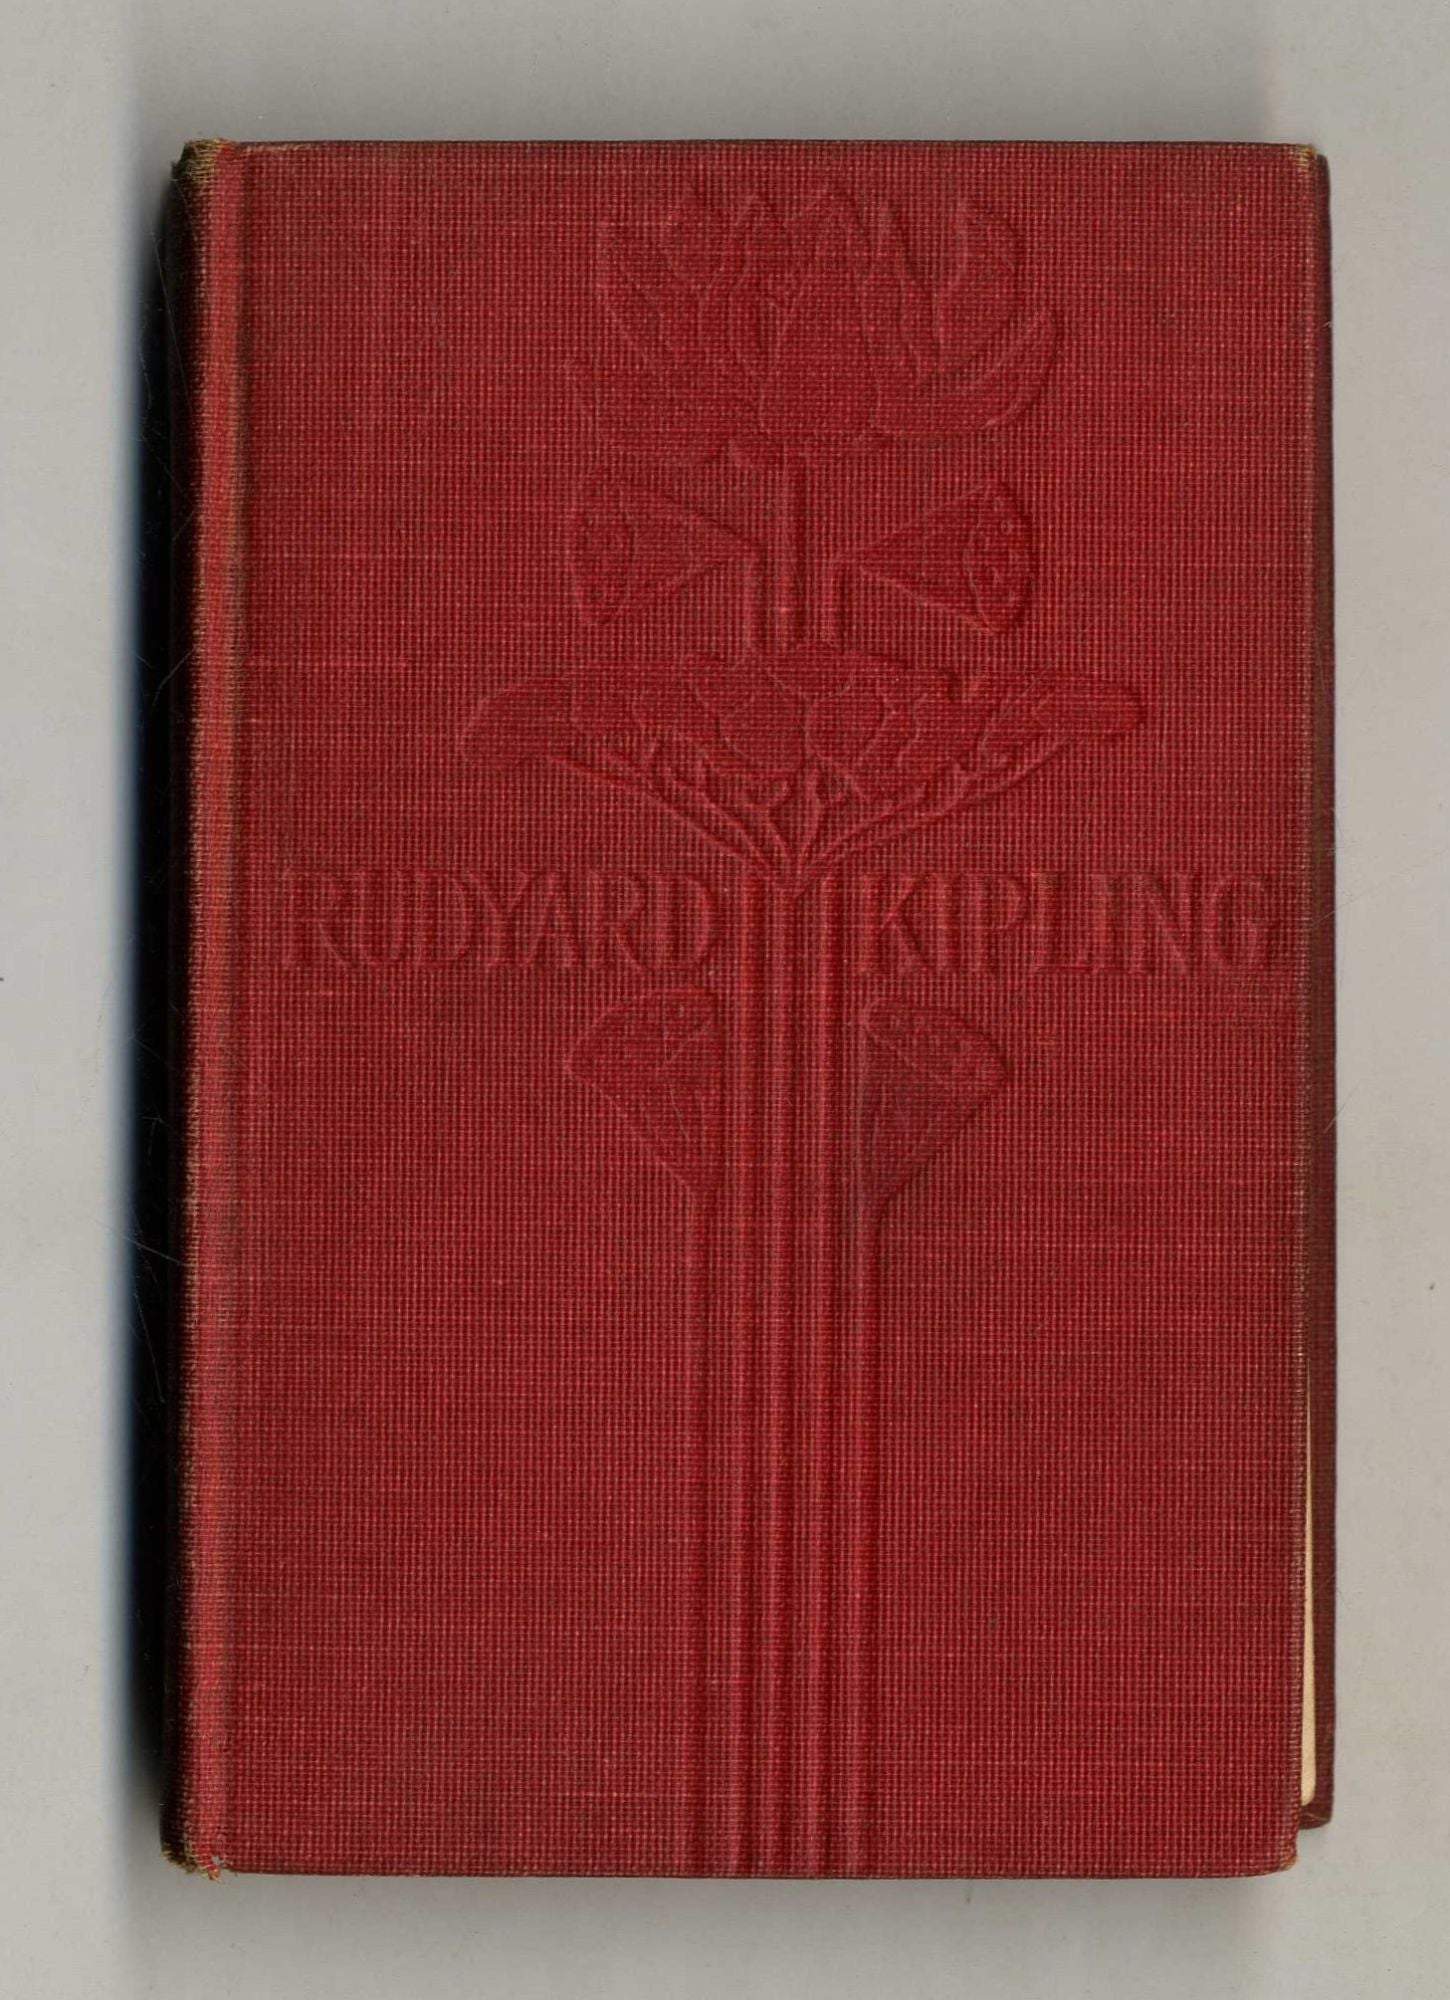 Book #160148 Wee Willie Winkie: and Other Stories. Rudyard Kipling.